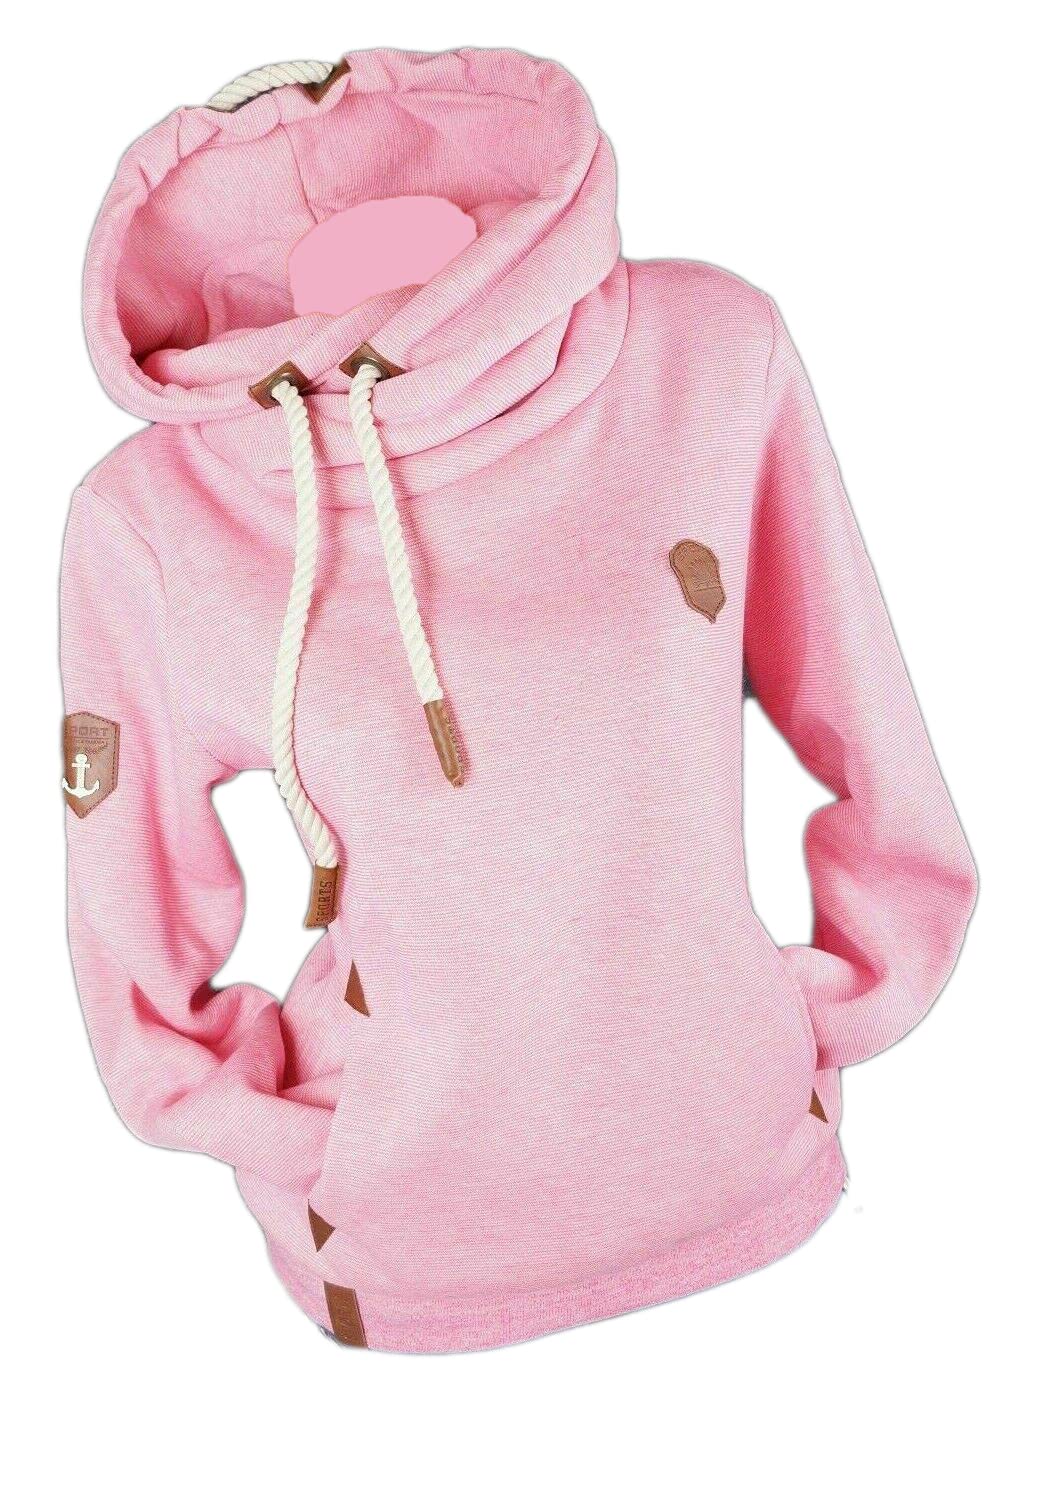 Damen Hoodie Kapuzenpullover Sweatshirt Warmer Fleece Pulli M L XL 2XL 3XL (Pink, XXL, xx_l)